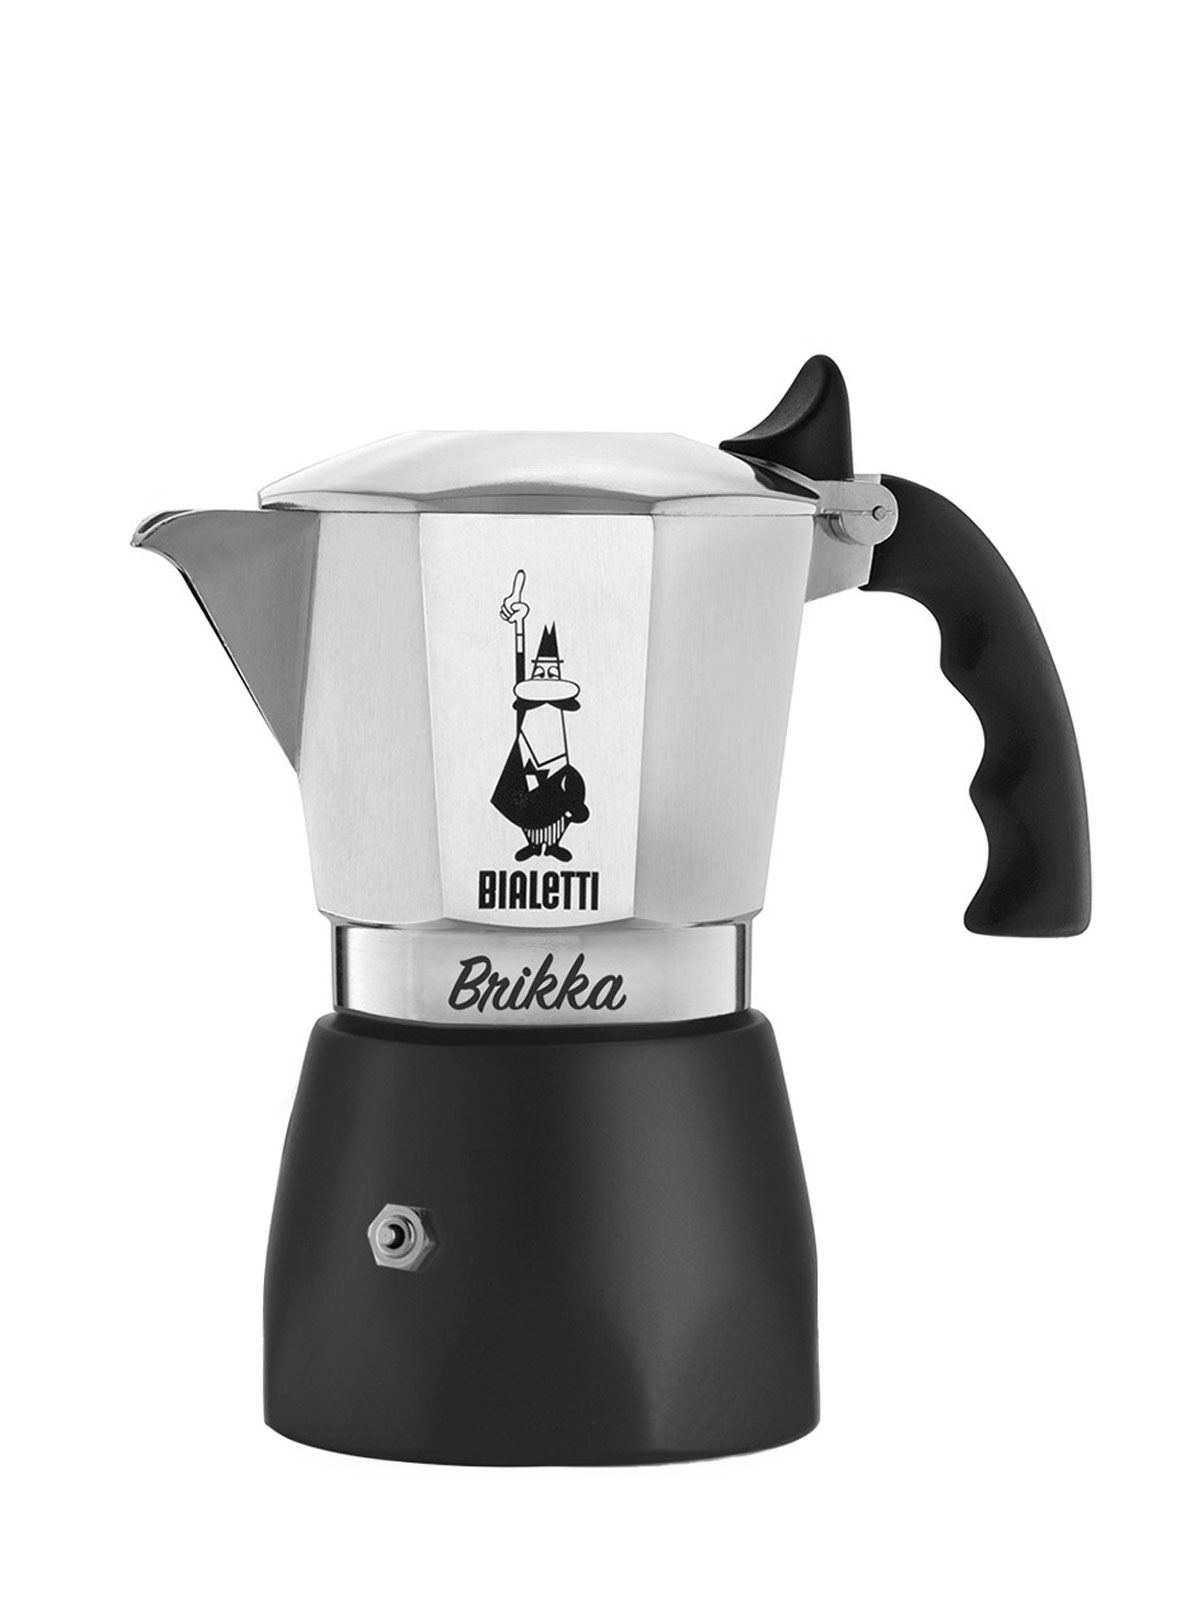 Bialetti Italien New Brikka 2020 Espressokocher 4 Tassen Aluminium